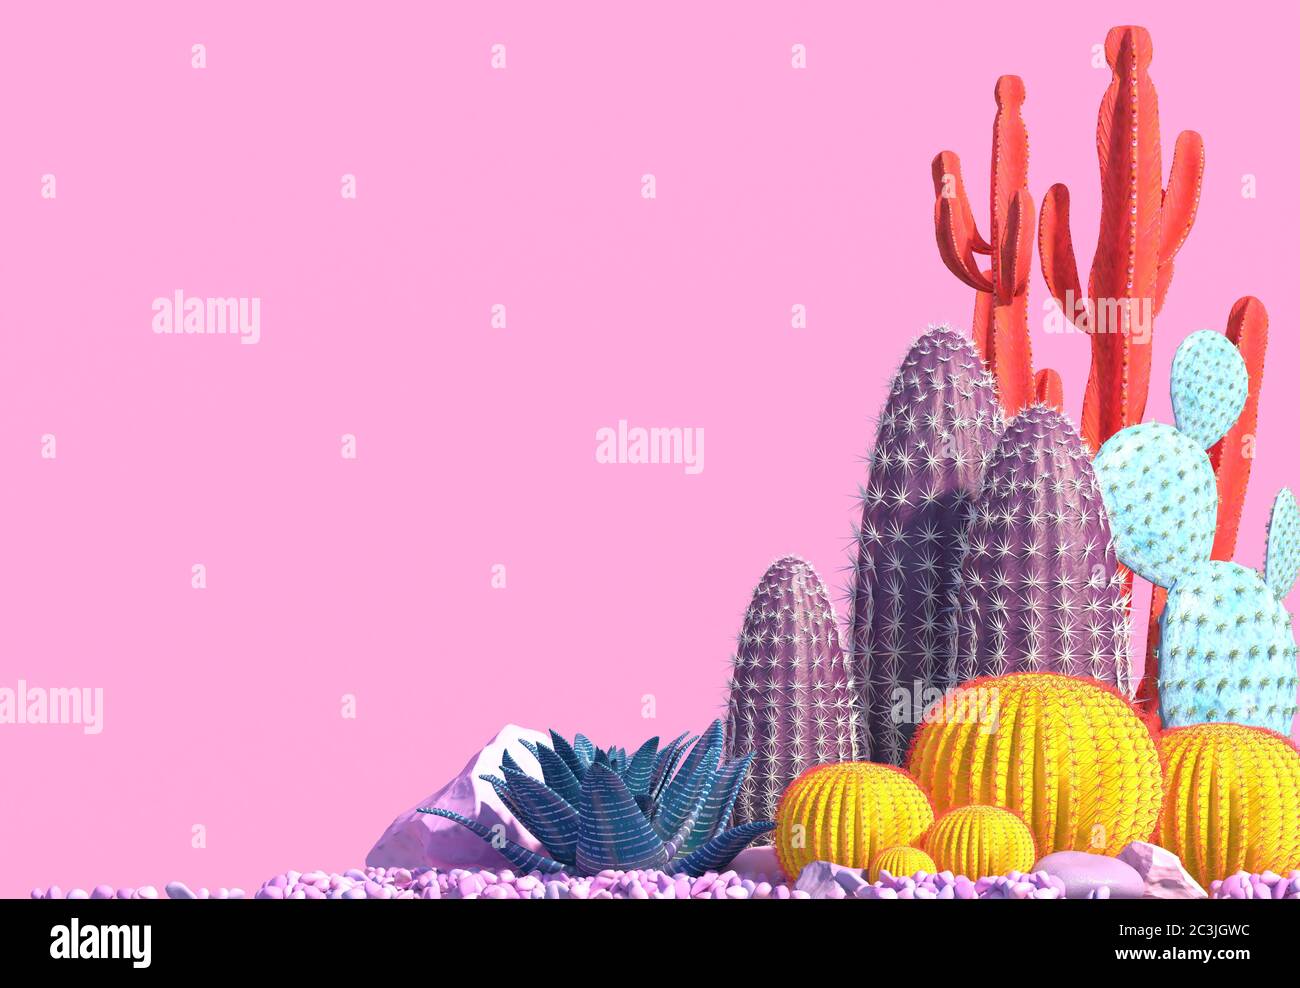 Composizione decorativa di gruppi di diverse specie di cactus multicolore su sfondo rosa. Arte contemporanea Сopy spazio. Rendering 3D. Foto Stock